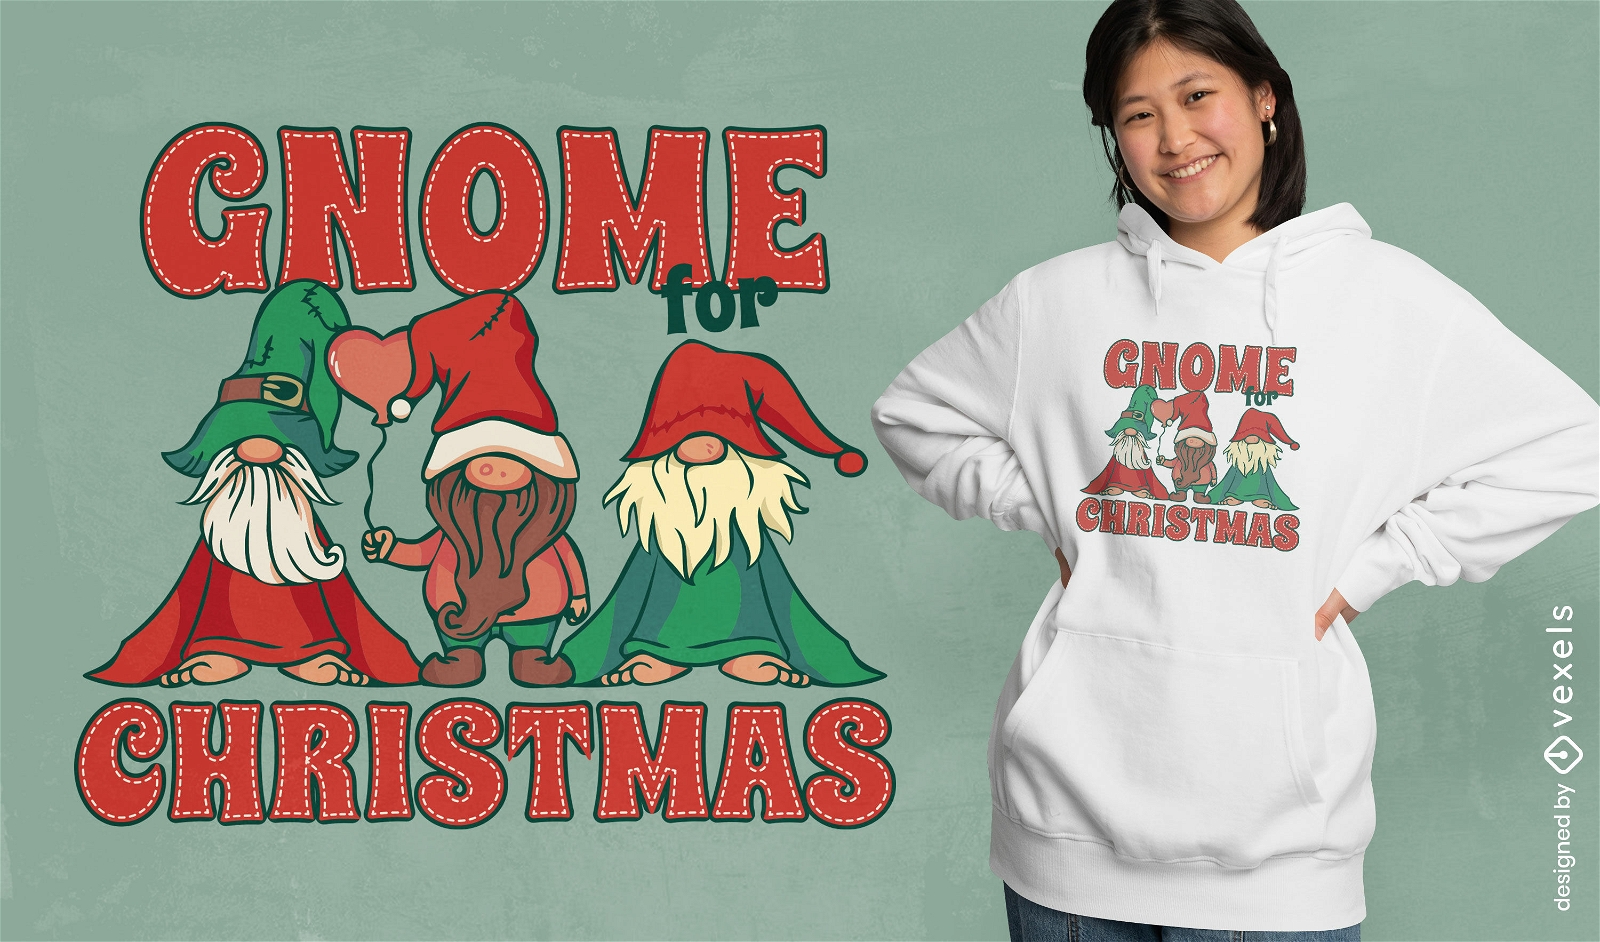 Gnome for christmas t-shirt design